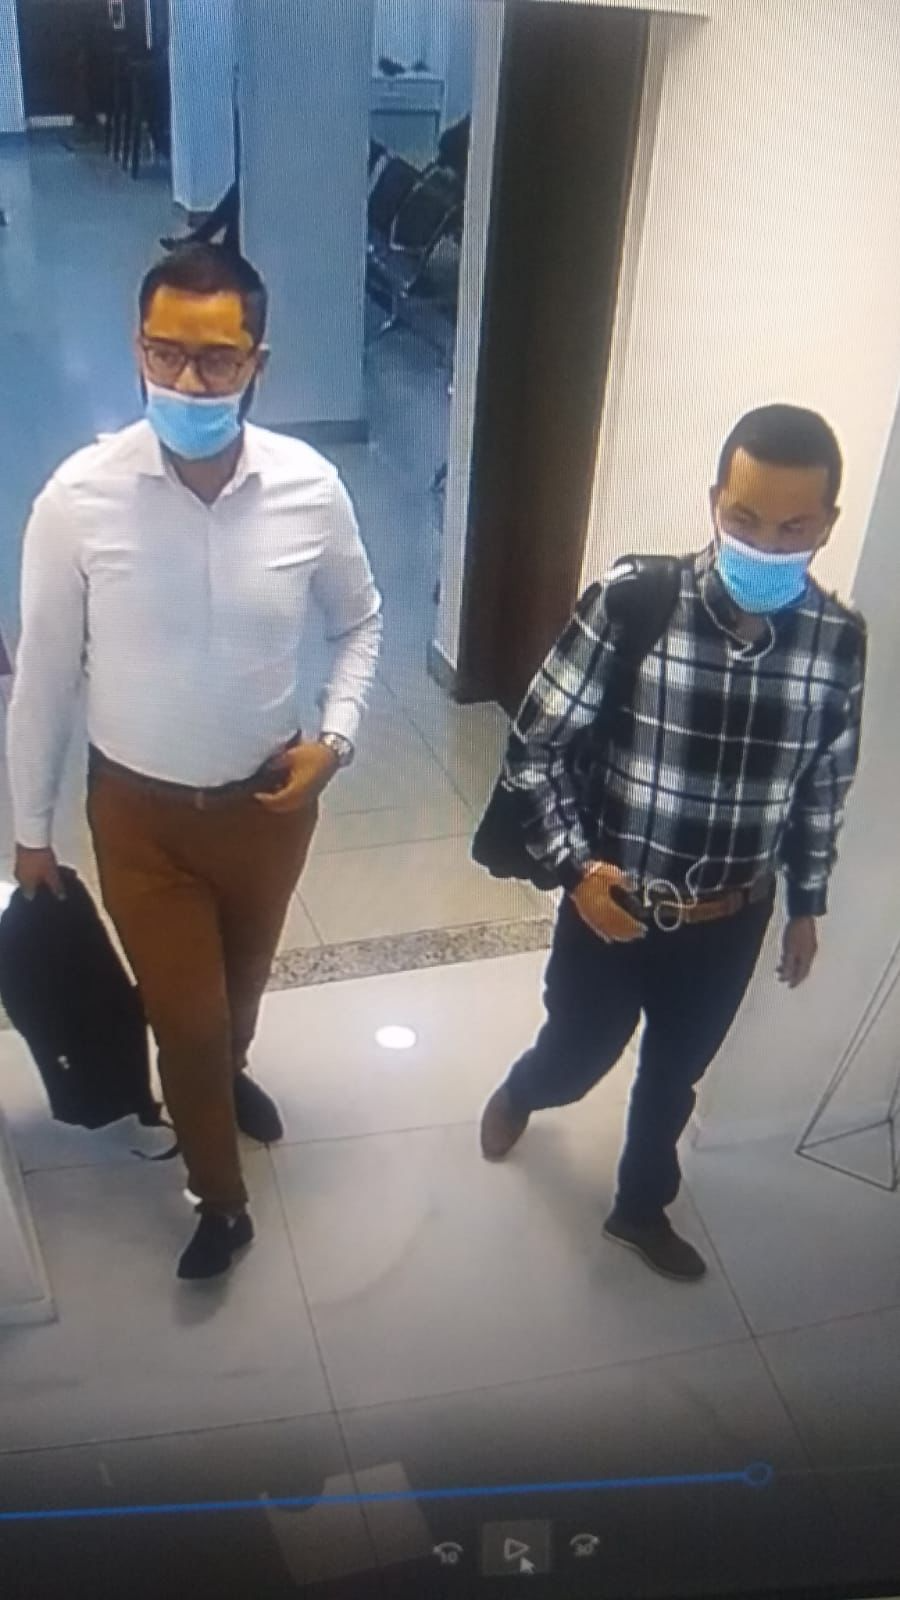 Bandidos foram flagrados pelas câmeras de segurança da clínica